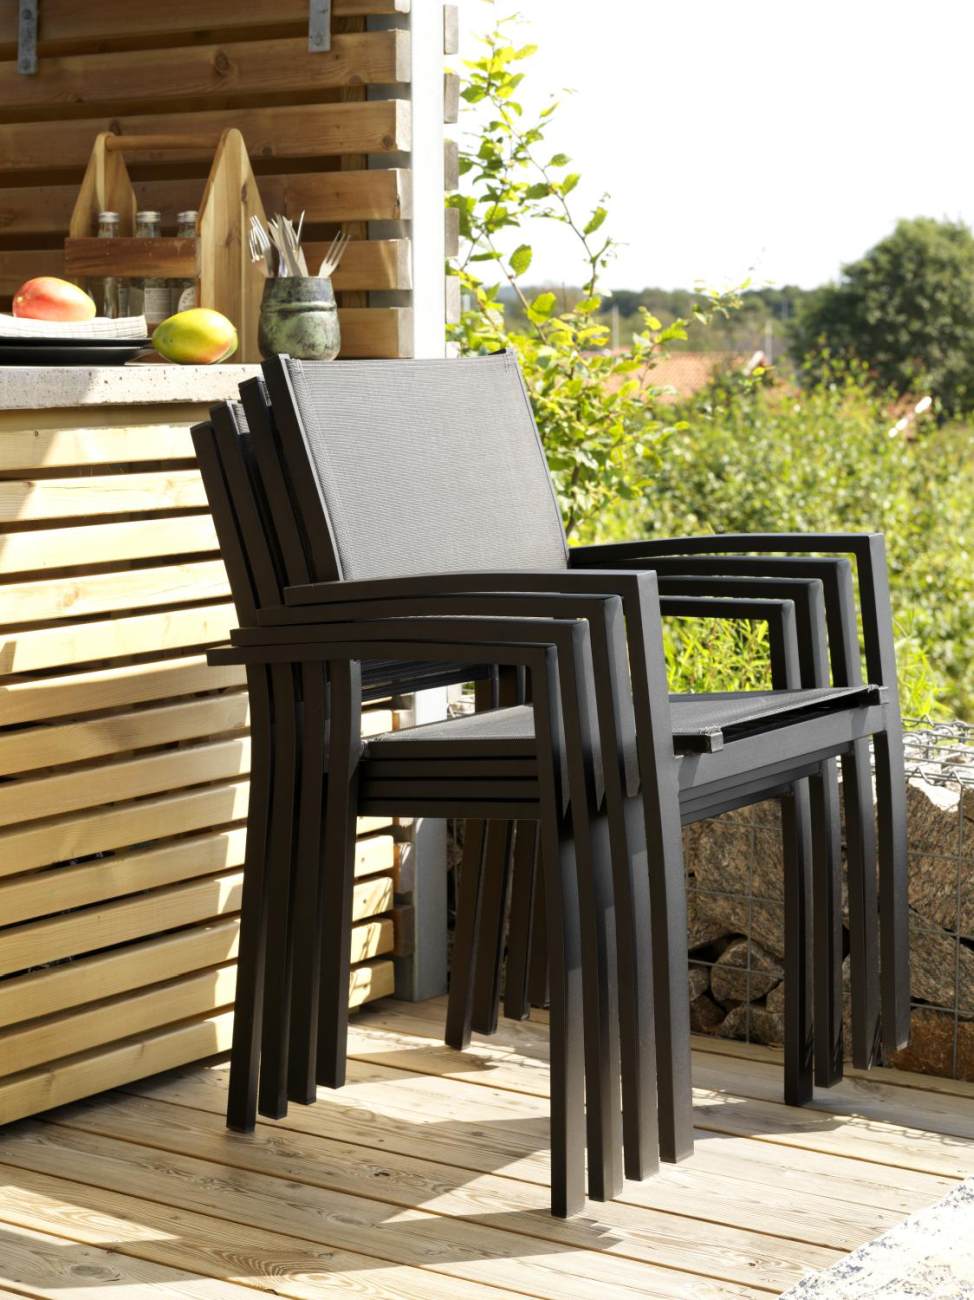 Der Gartenstuhl Rana überzeugt mit seinem modernen Design. Gefertigt wurde er aus Textilene, welcher einen schwarzen Farbton besitzt. Das Gestell ist aus Metall und hat eine schwarze Farbe. Die Sitzhöhe des Stuhls beträgt 44 cm.